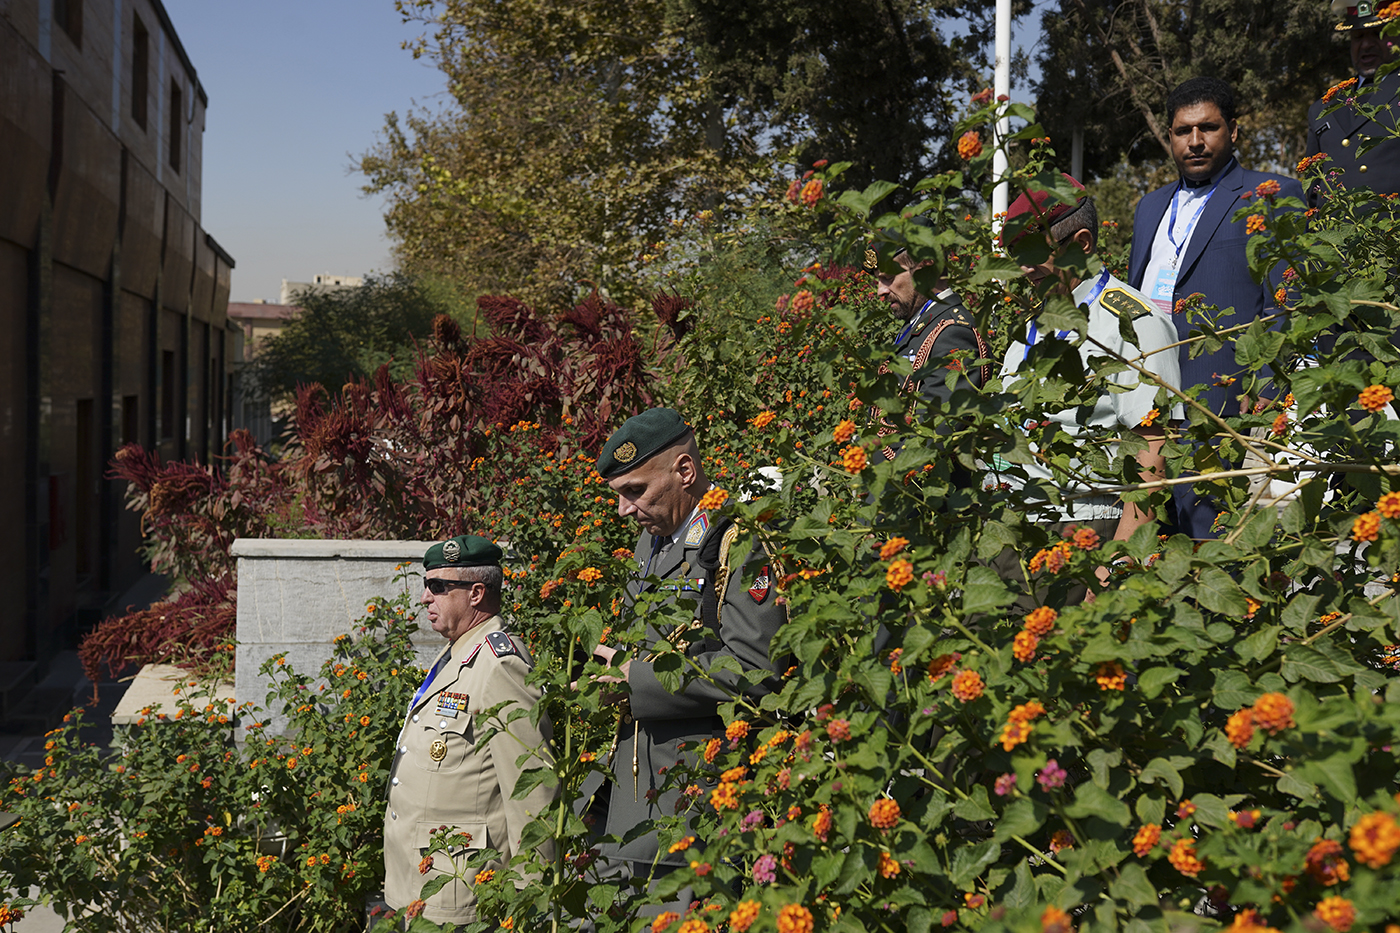 نشست افسران رابط پلیس کشورهای خارجی مستقر در تهران